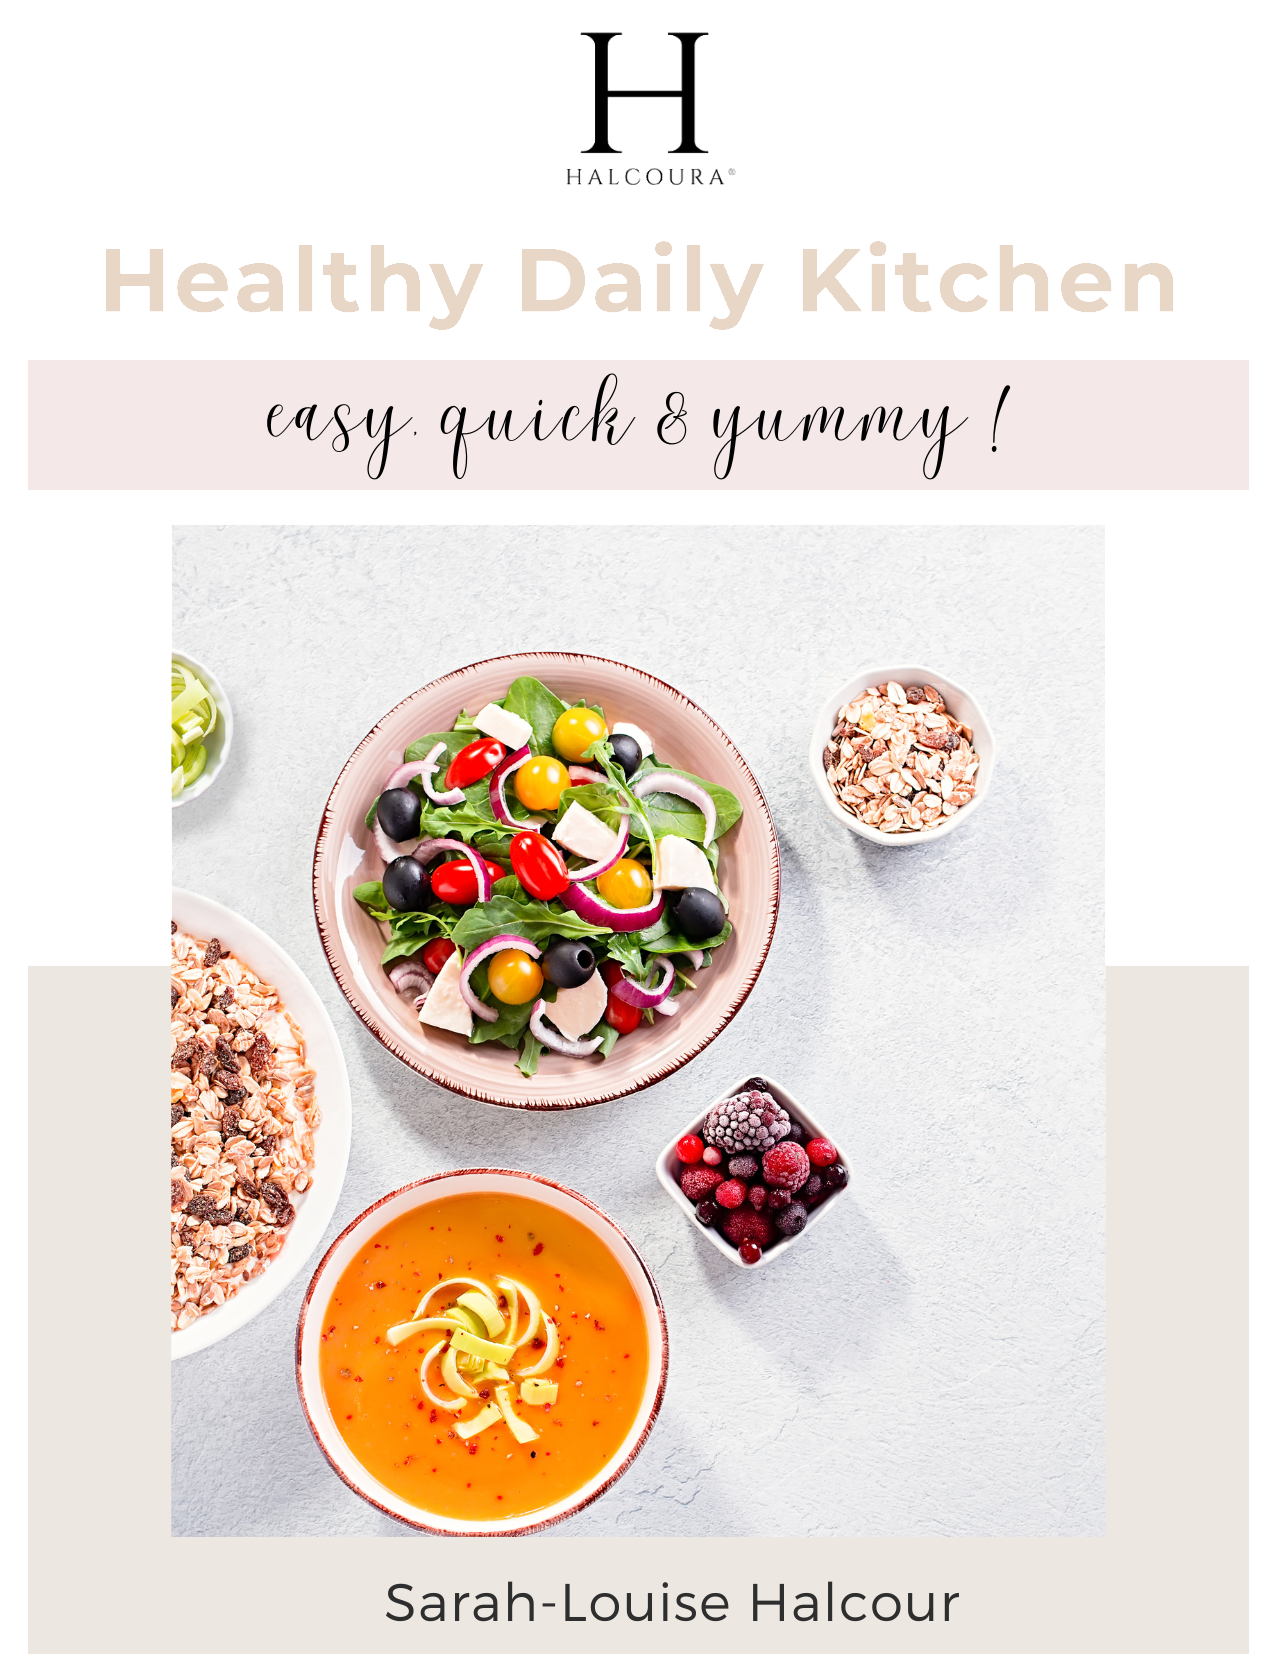 Daily Healthy Kitchen- schnelle, leckere & einfache Lieblingsgerichte!